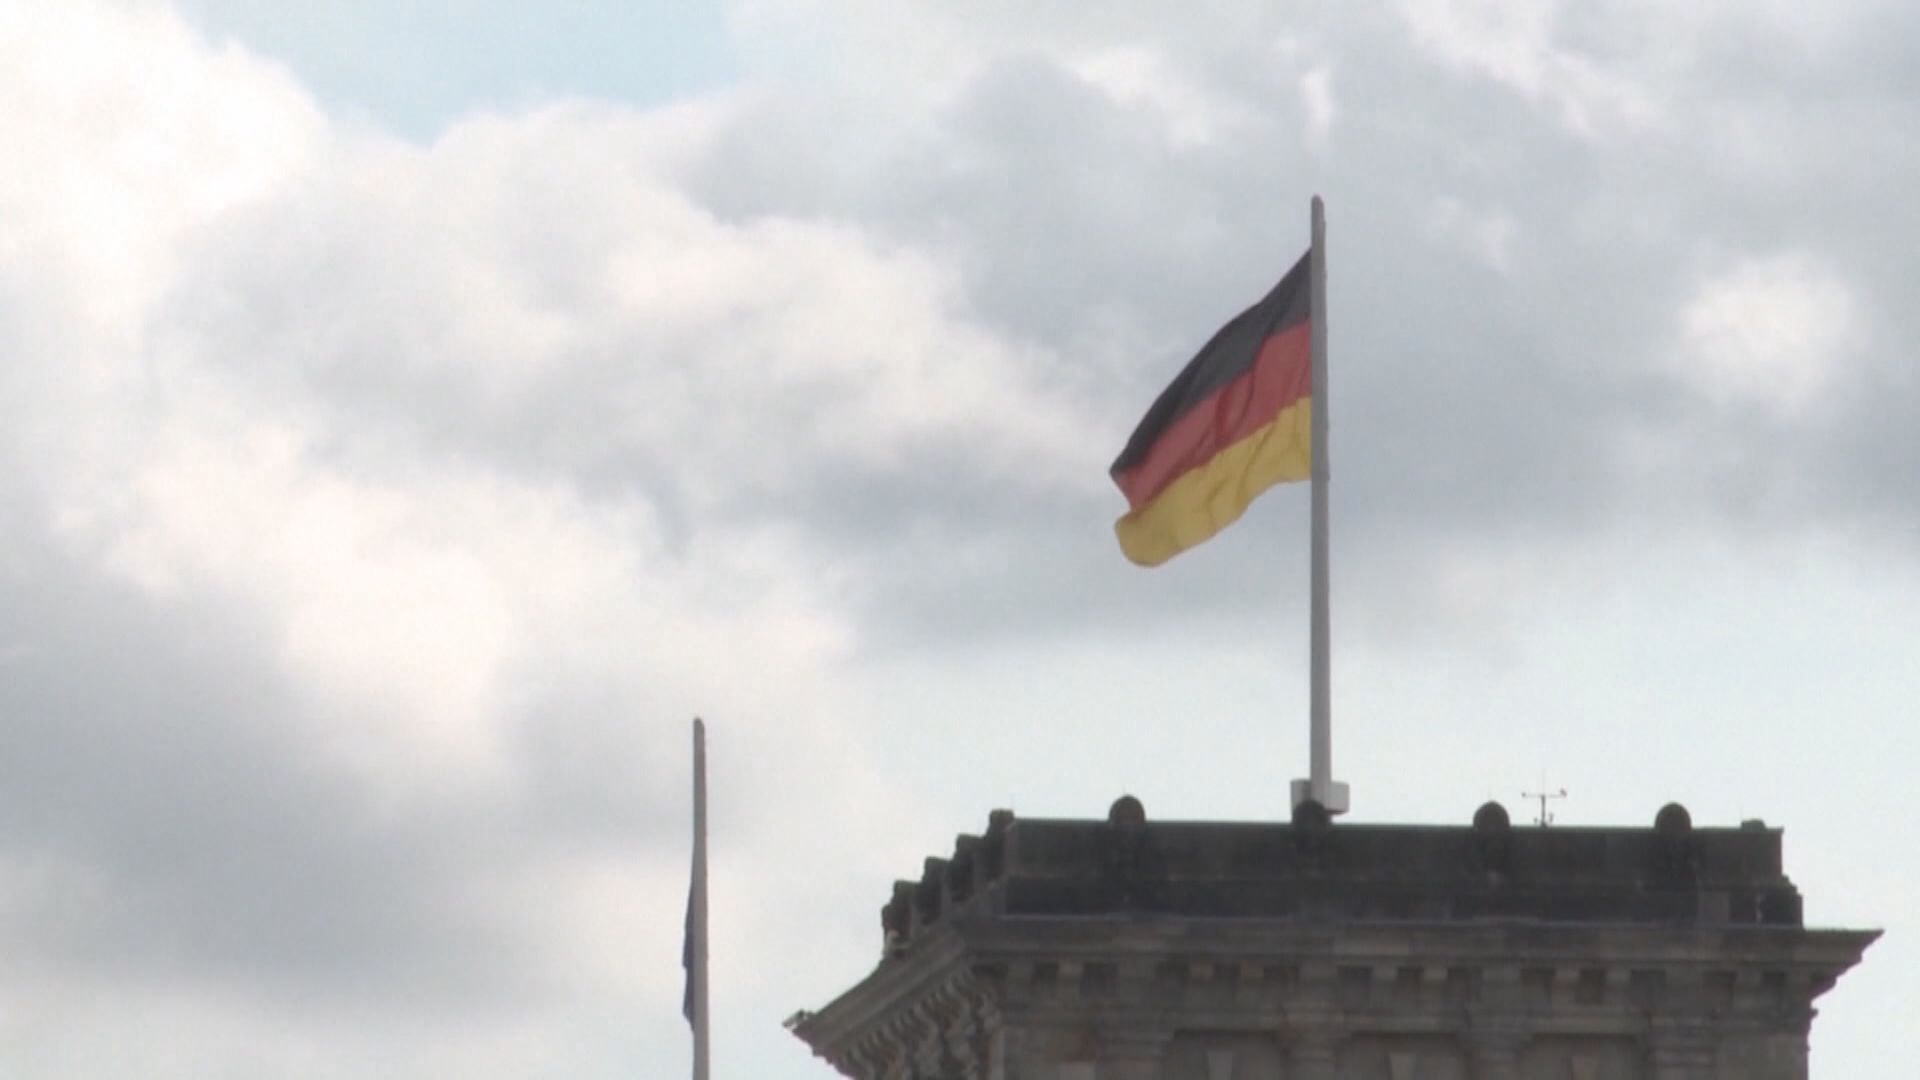 德國再拘一人涉向中國提供機密情報 中國駐德使館批評媒體炒作間諜威脅